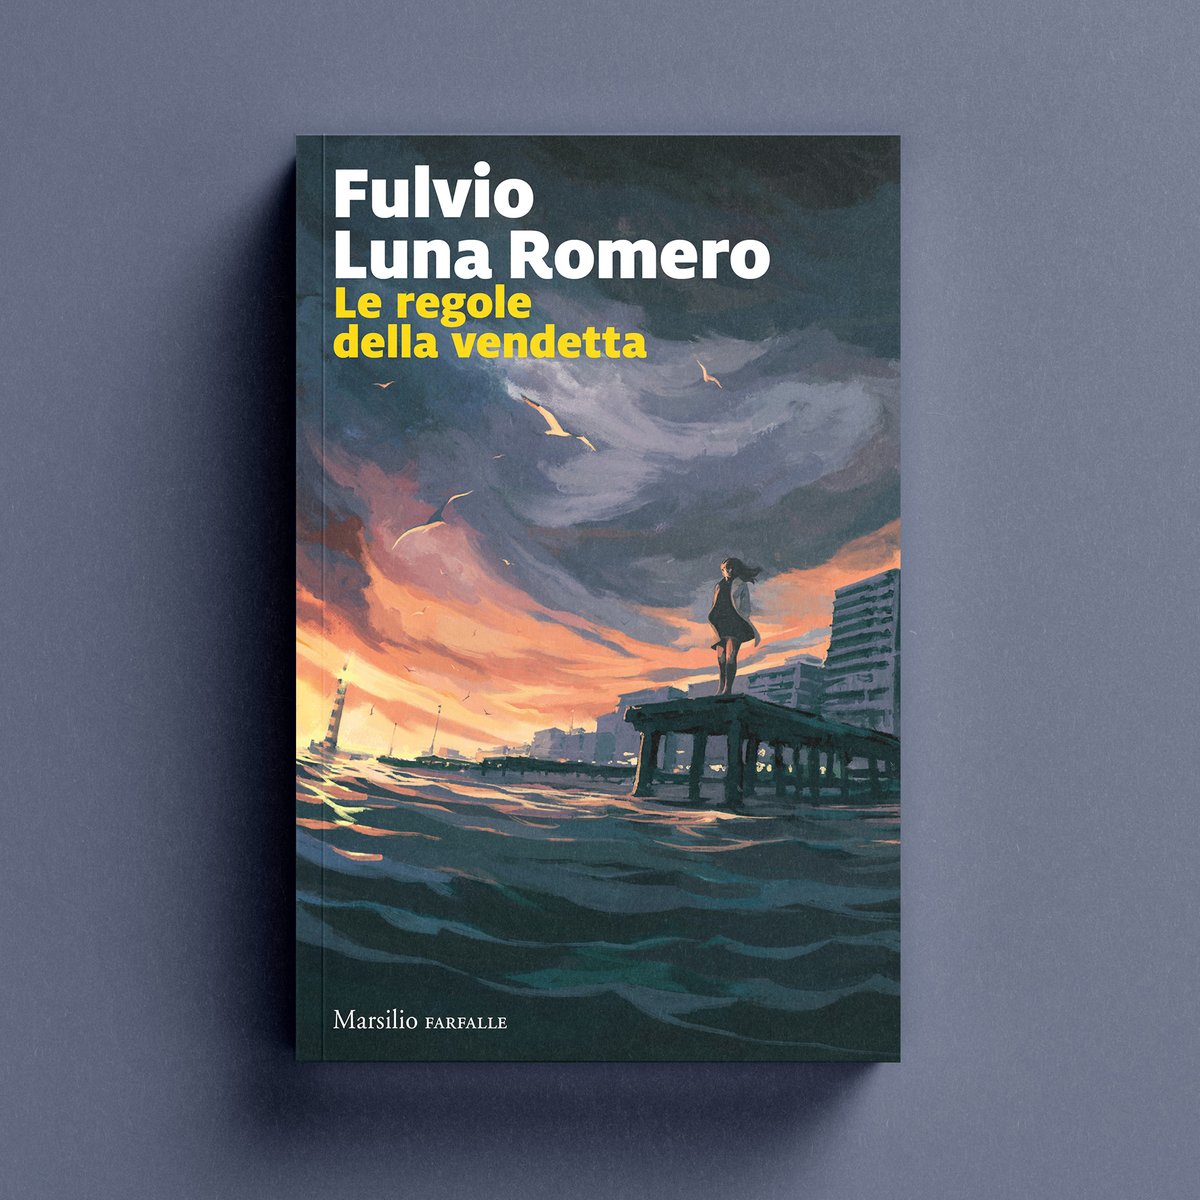 ✍️ Fulvio Luna Romero 📖 Le regole della vendetta Da domani in libreria! 🔗 bit.ly/Leregoledellav… #Marsilio #farfalle #LeRegoledellaVendetta #FulvioLunaRomero